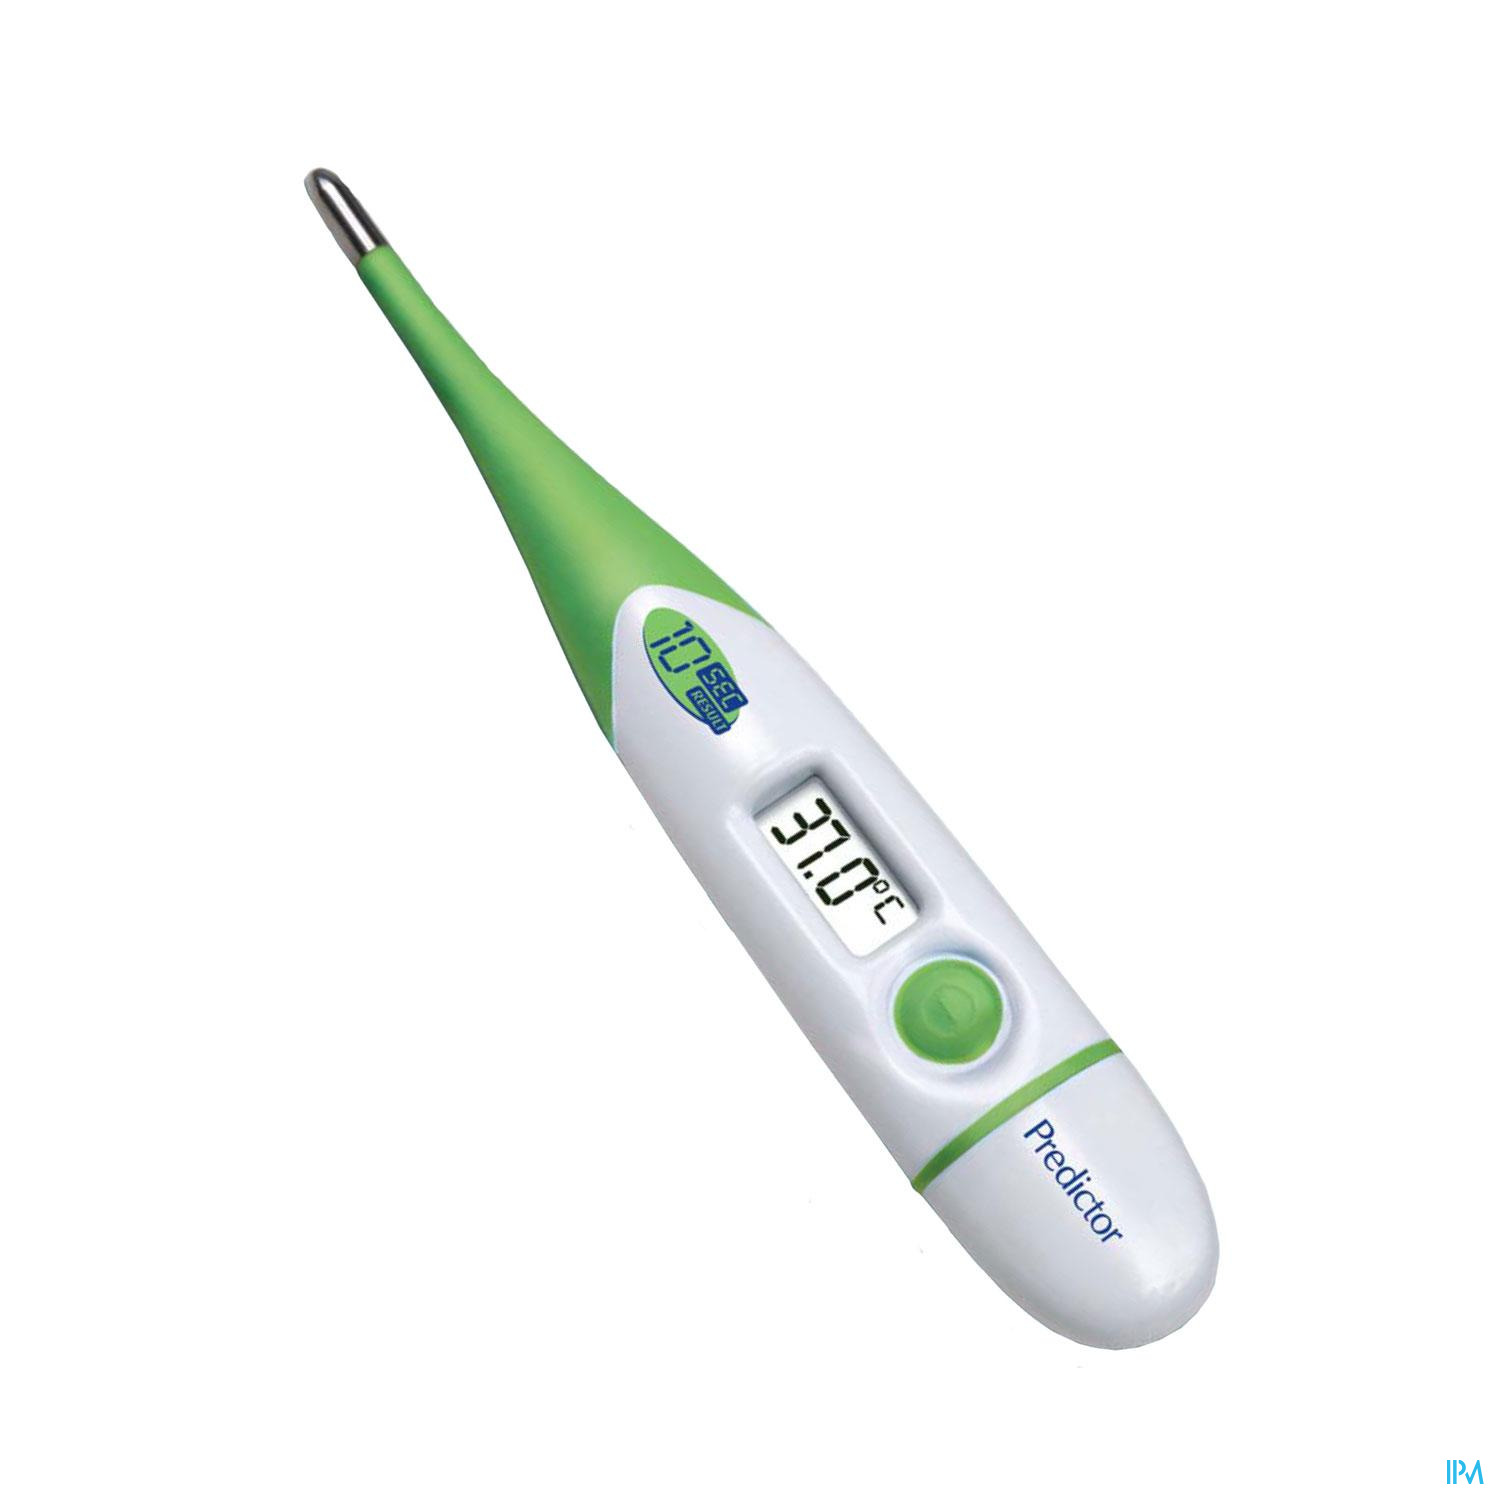 Predictor Thermometre Digital Flex - Thermomètre - Autodiagnostics